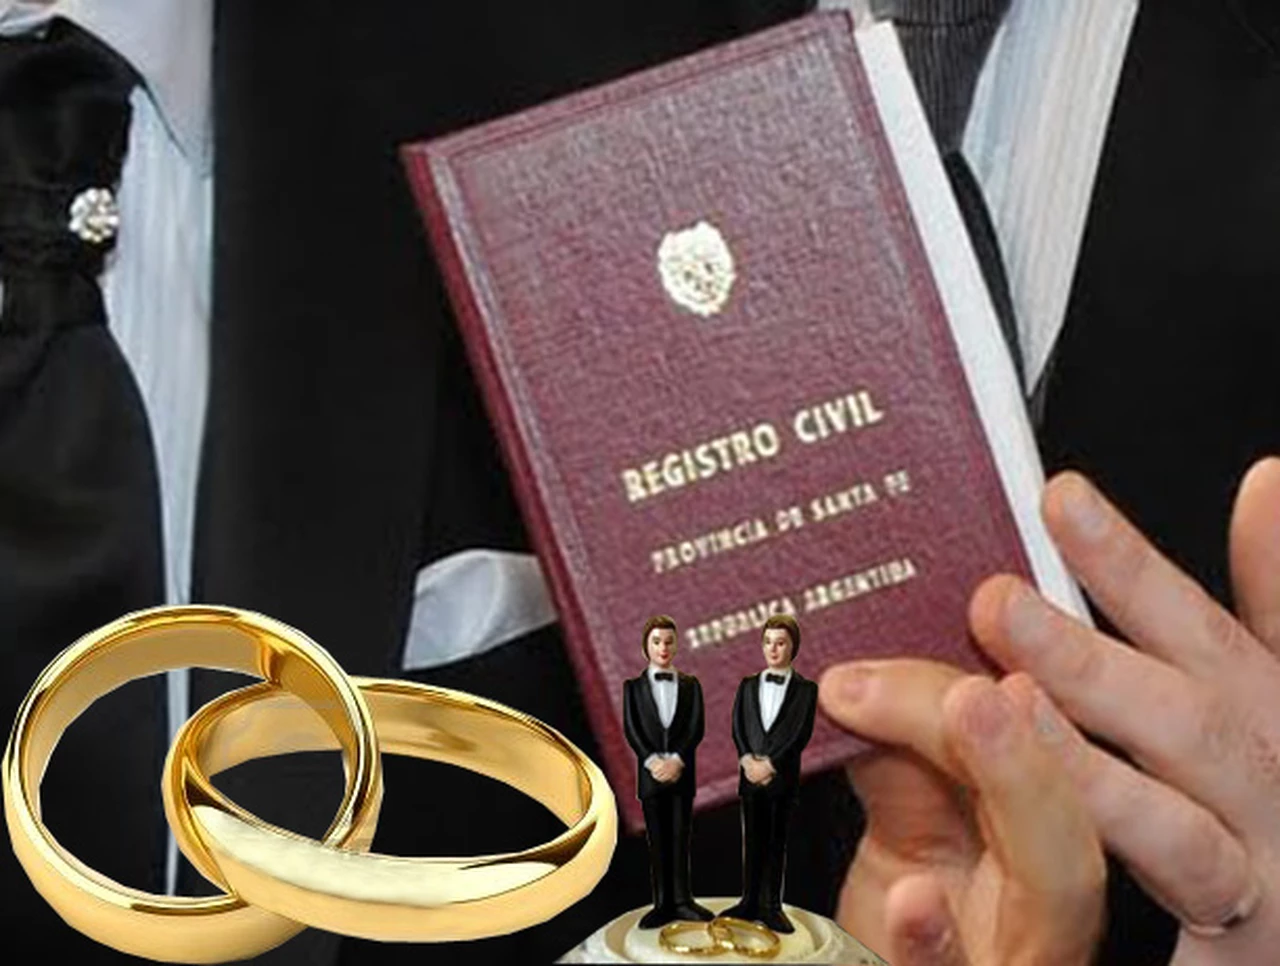 Los hijos de matrimonio igualitario podrán tener el apellido de ambos cónyuges en Capital